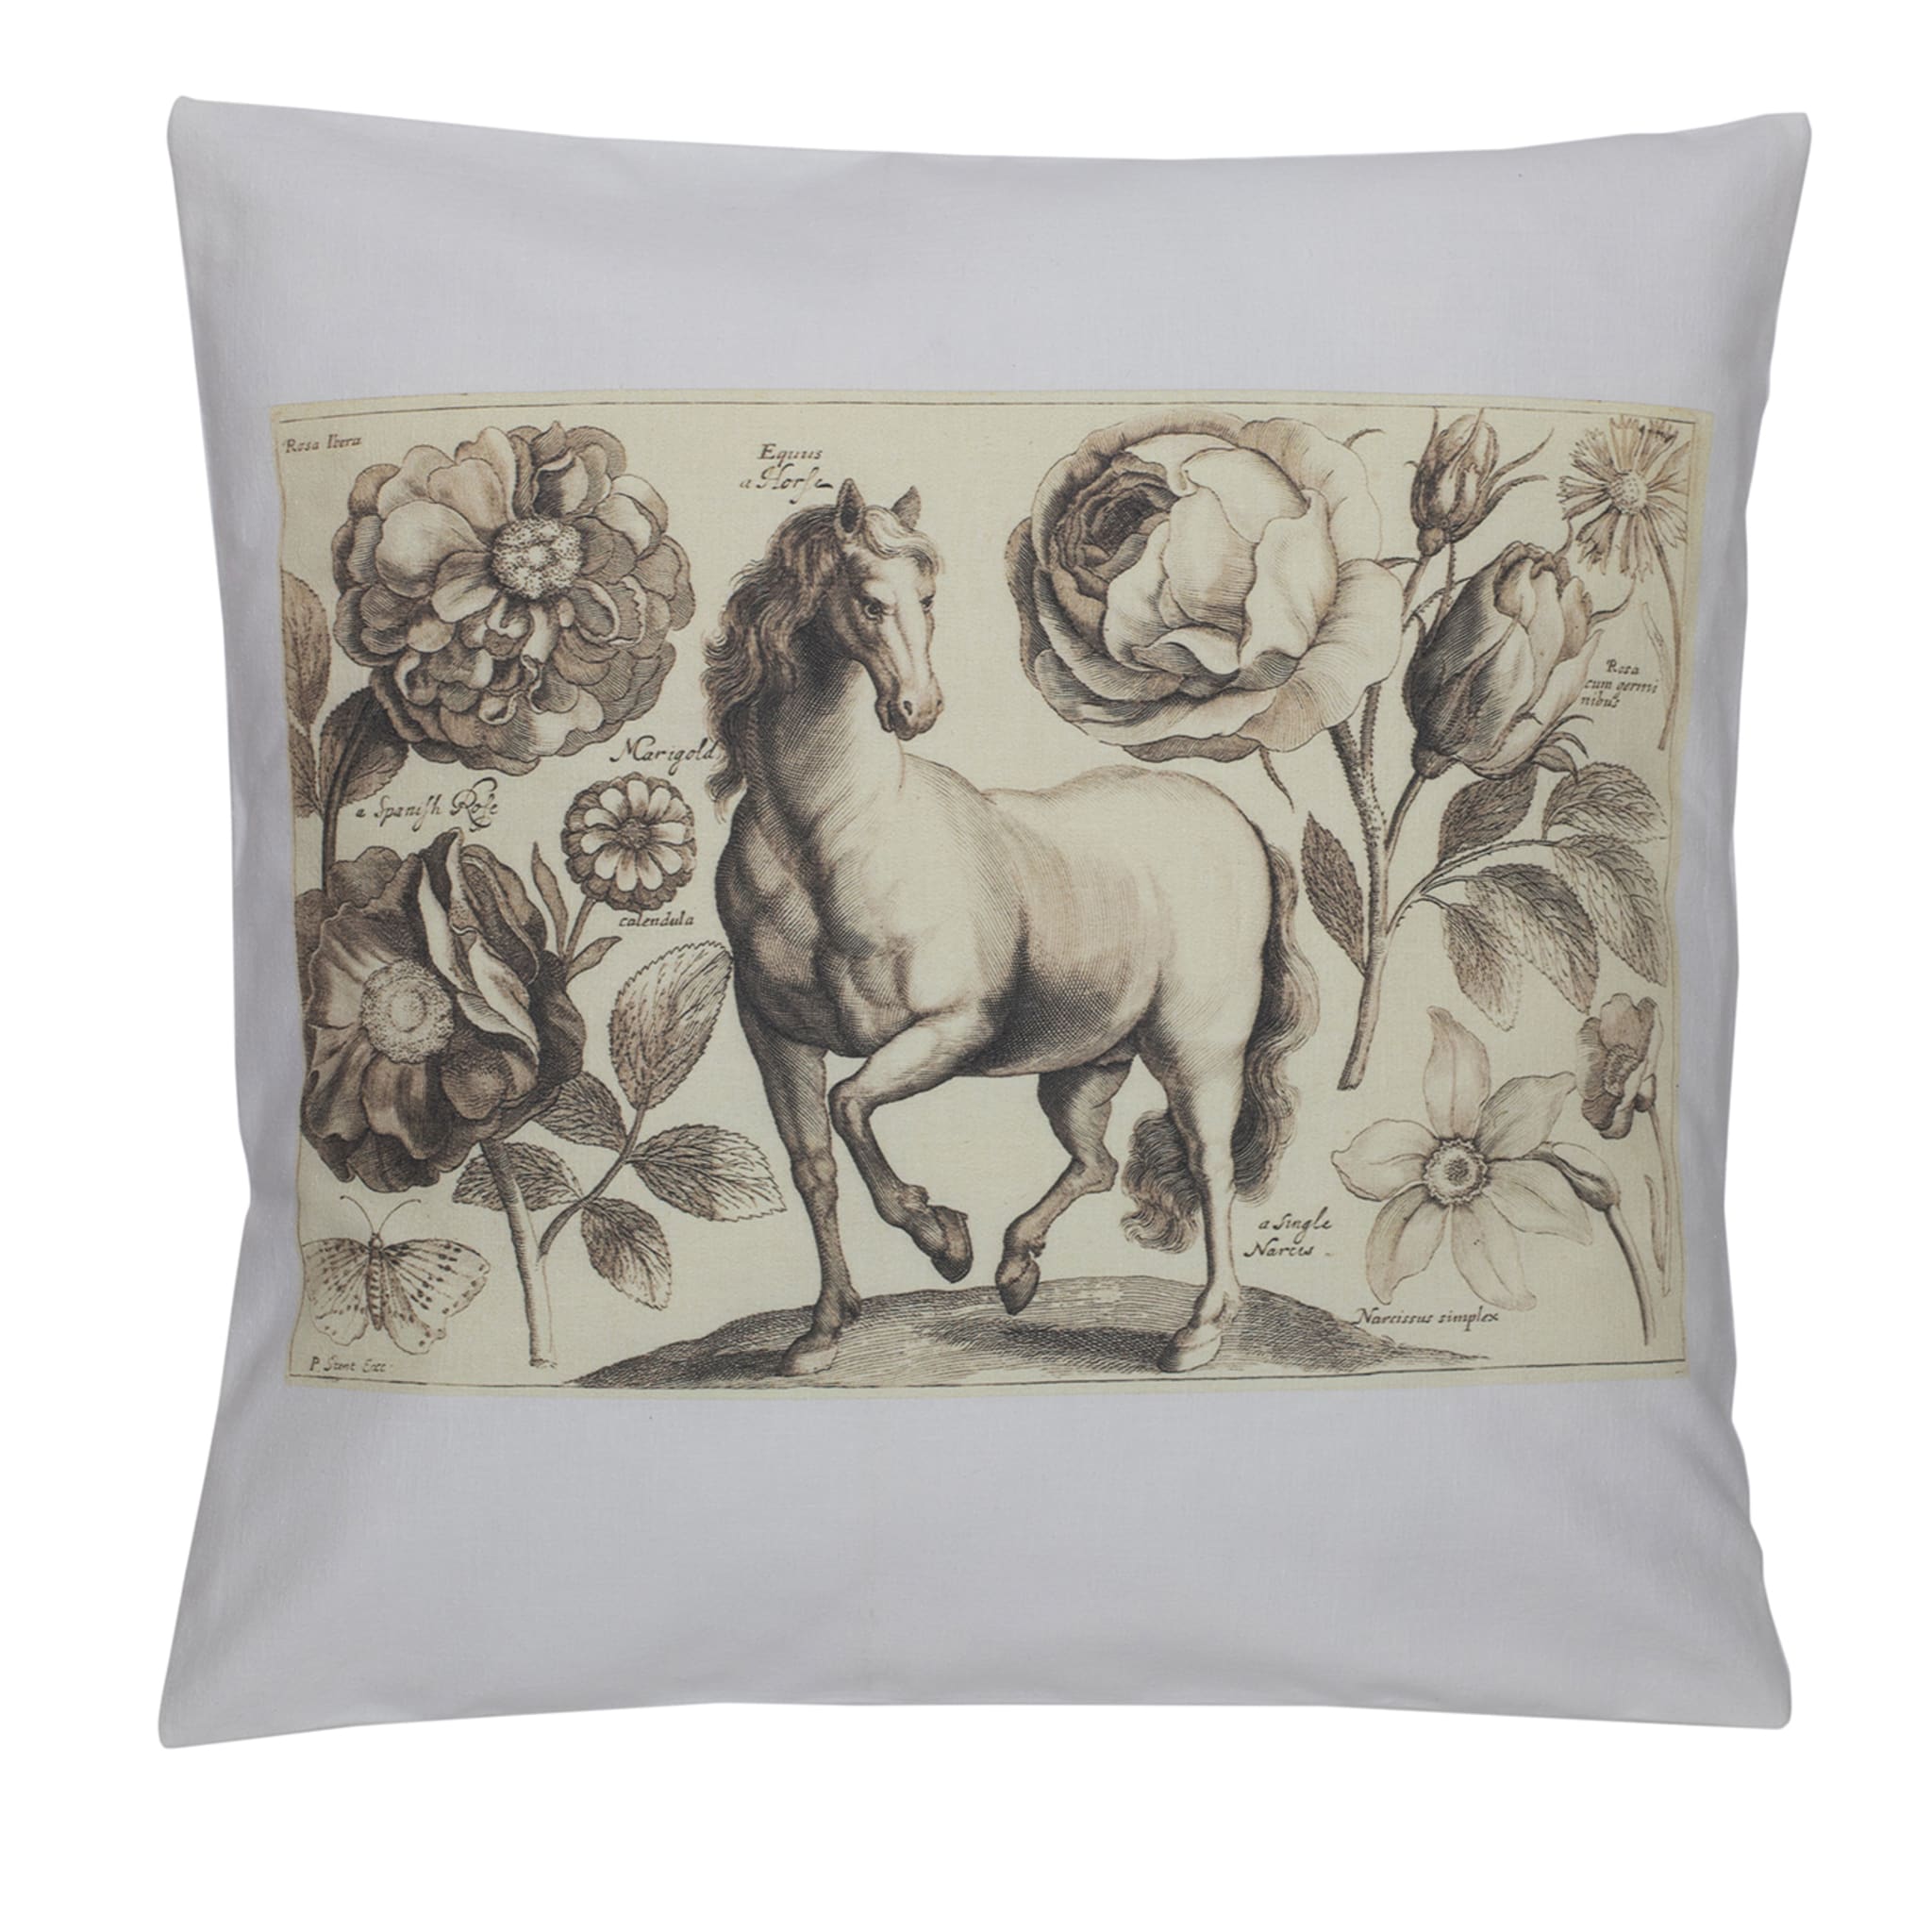 Florilegio con Cavallo cushion cover - Main view